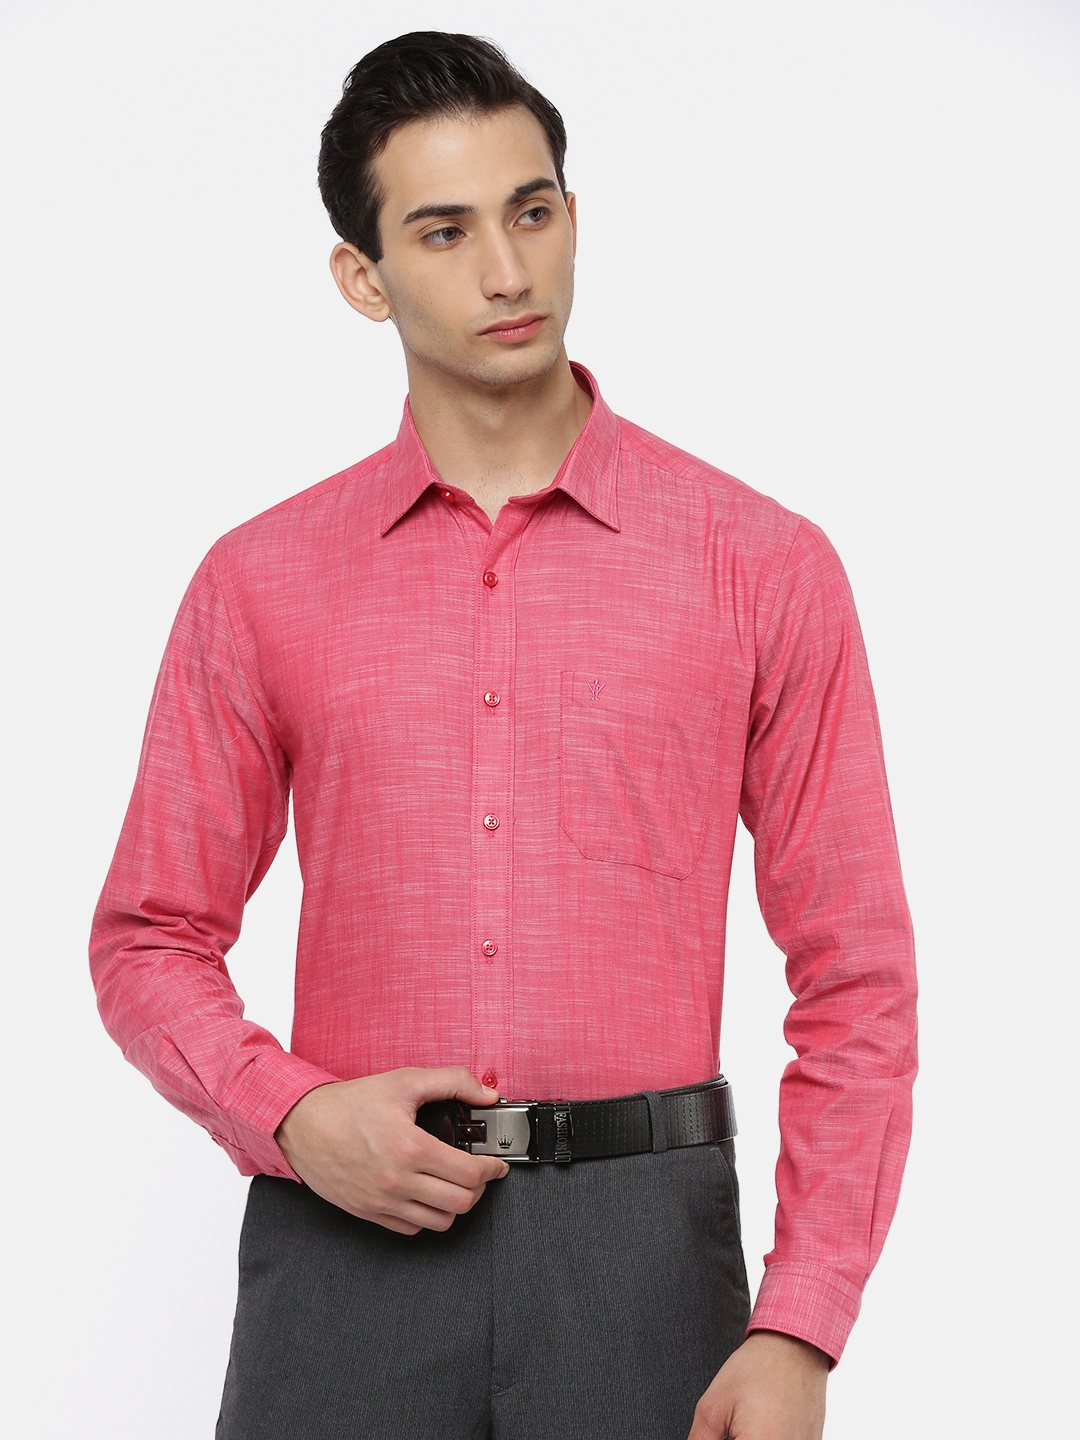 Ramraj Cotton | Red Solid Formal Shirts